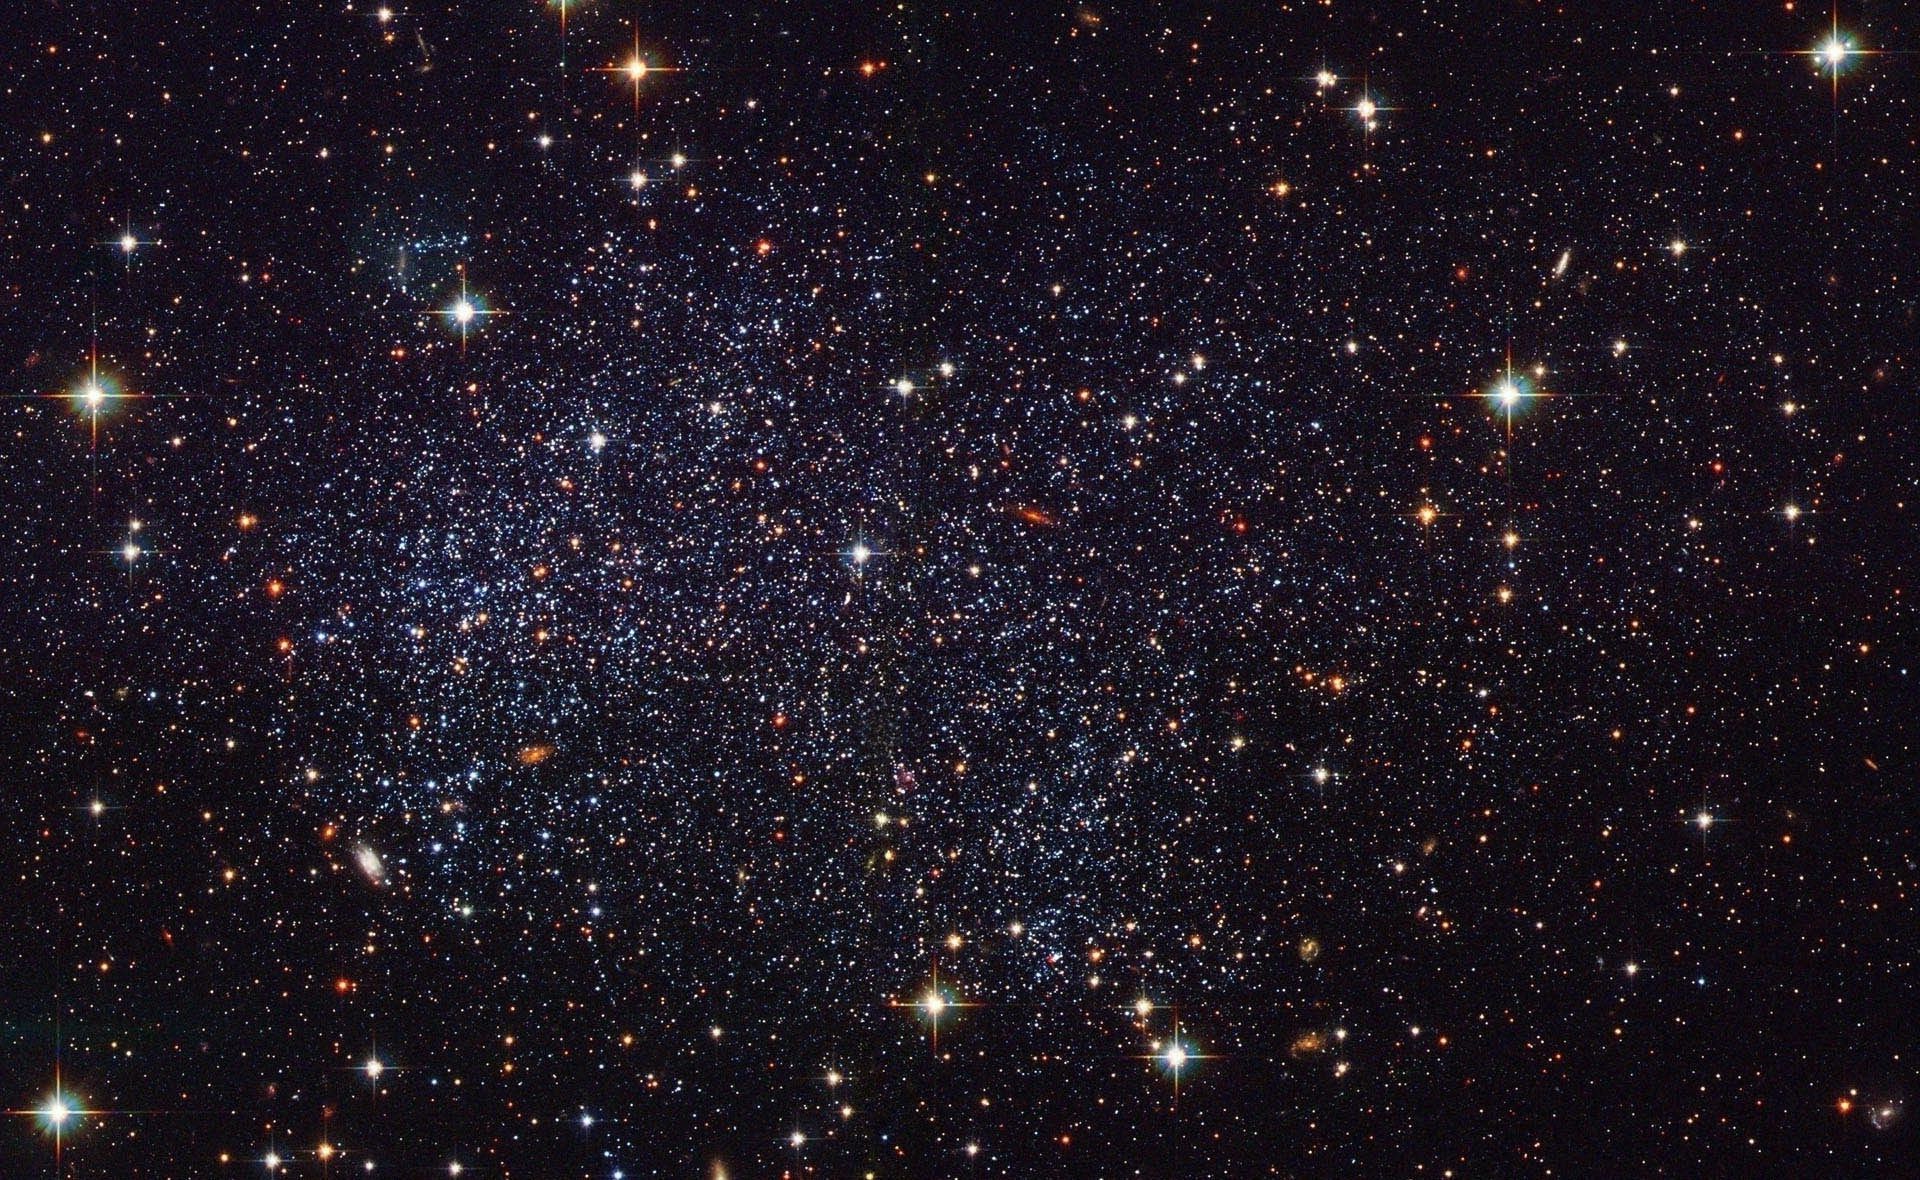 галактики астрономия созвездие пространство туманность пыль темный астрология иллюстрация стеллар бесконечность сверхновая светит орион планеты космос наука